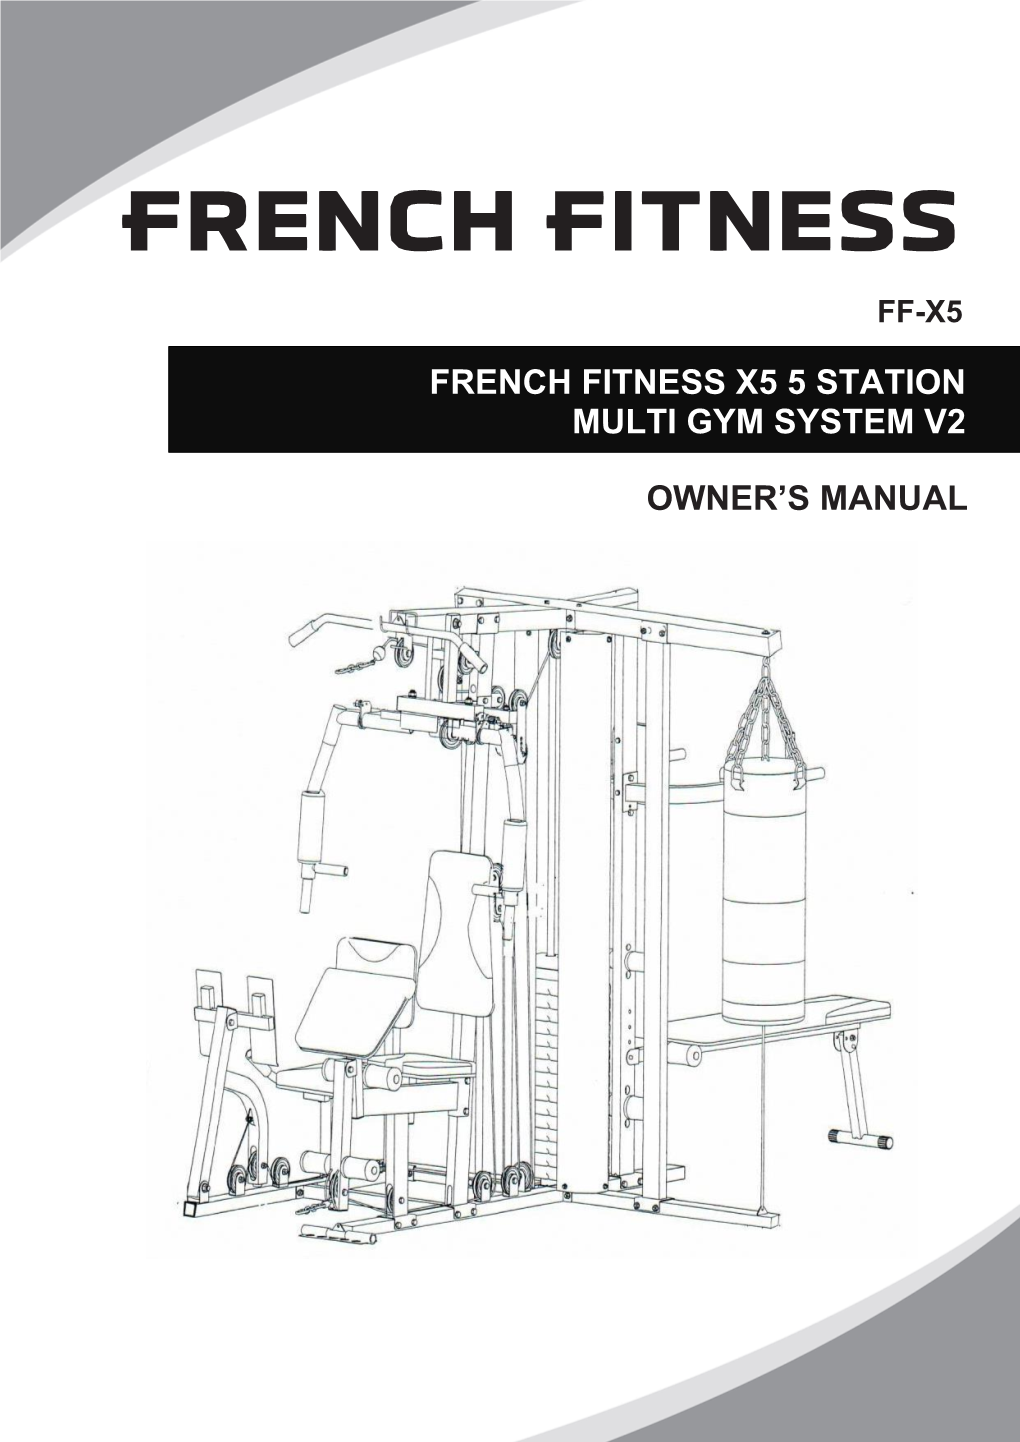 French Fitness X5 5 Station Multi Gym System V2